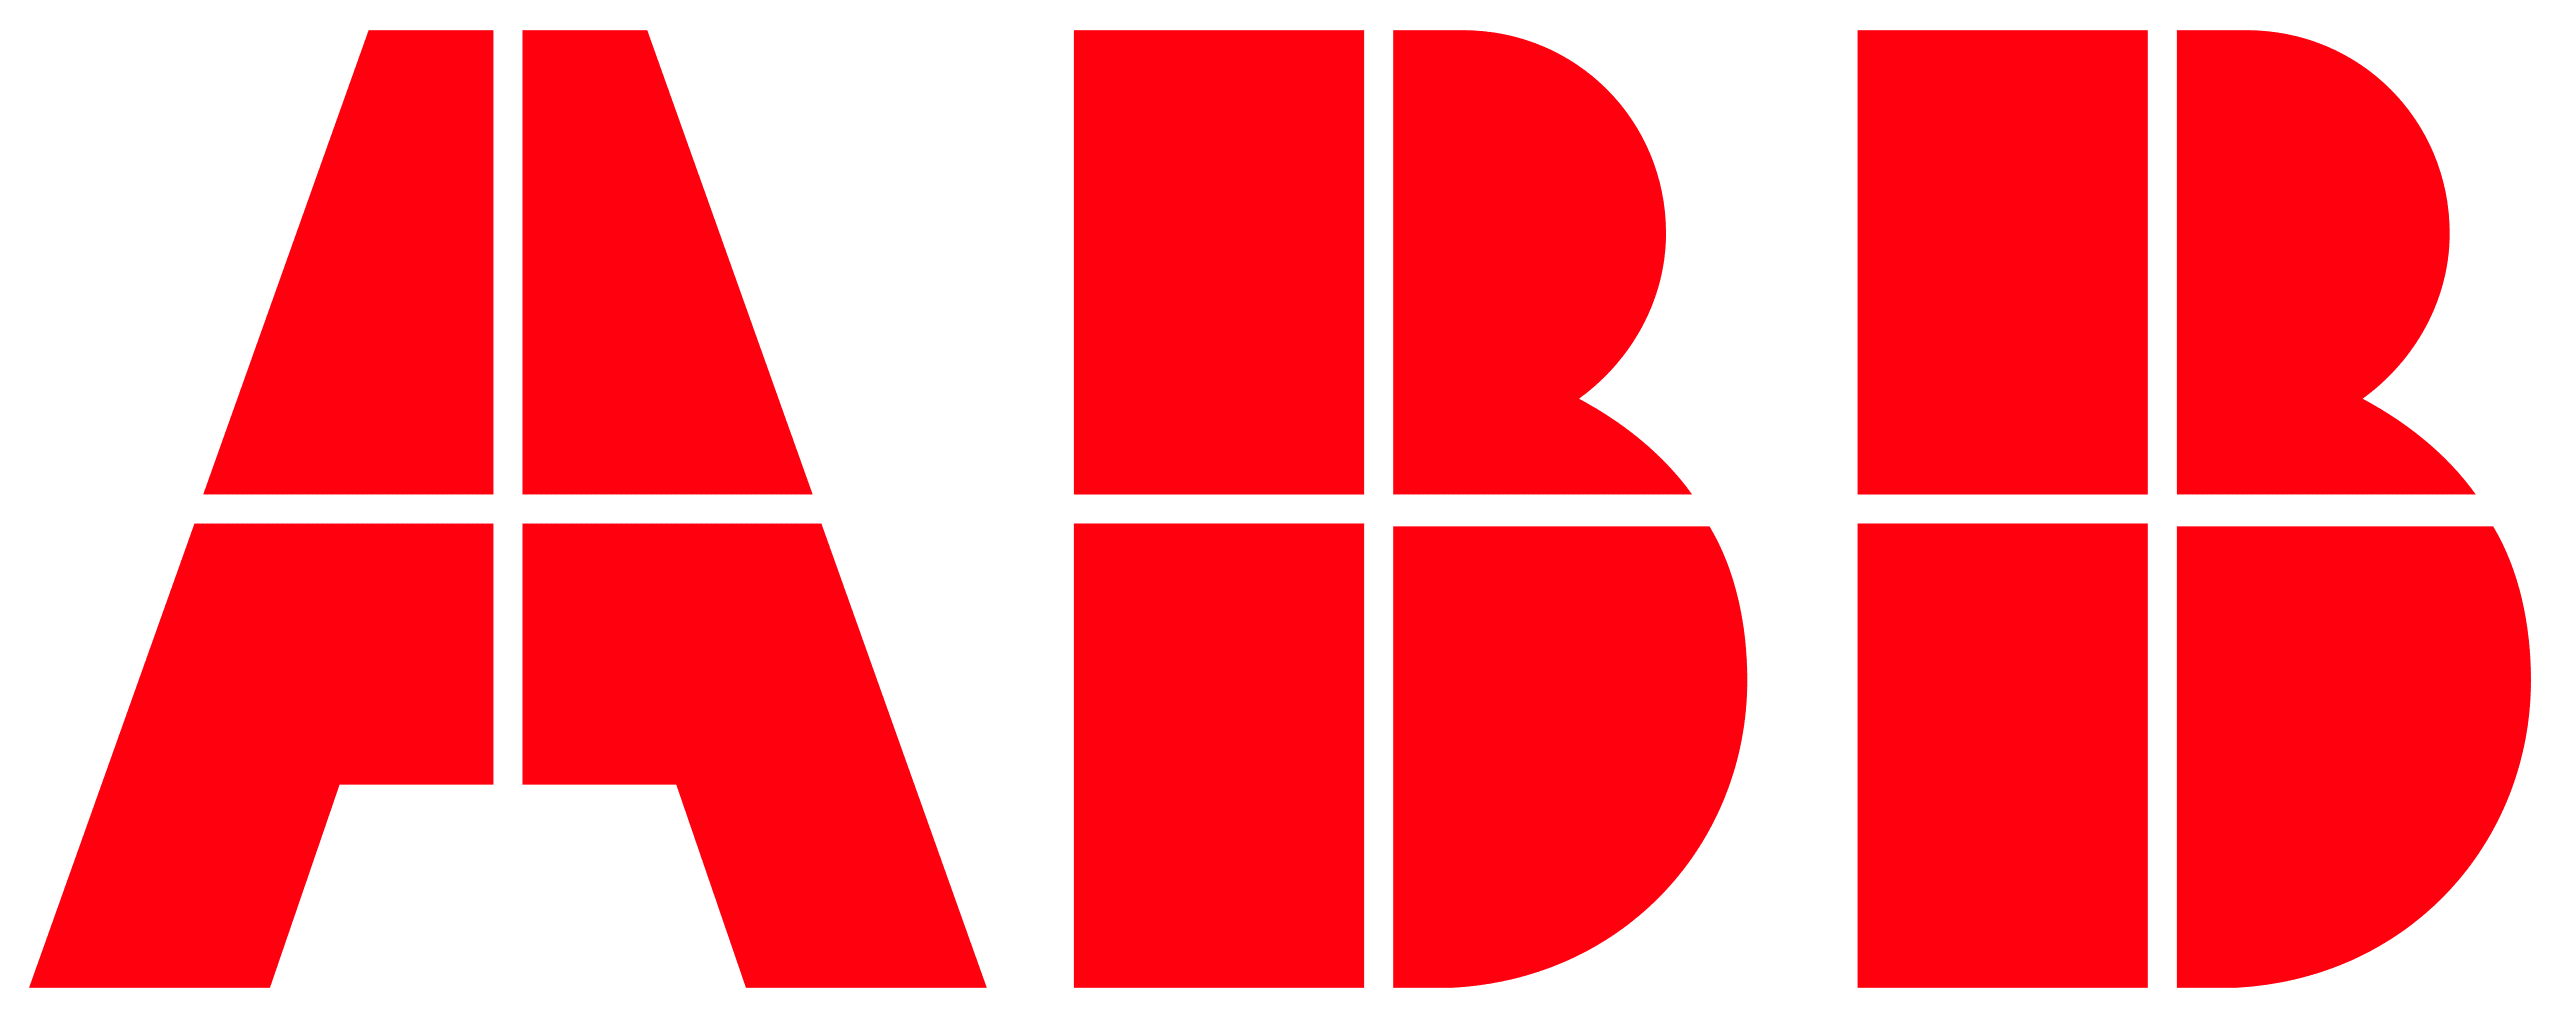 2560px-ABB_logo.svg